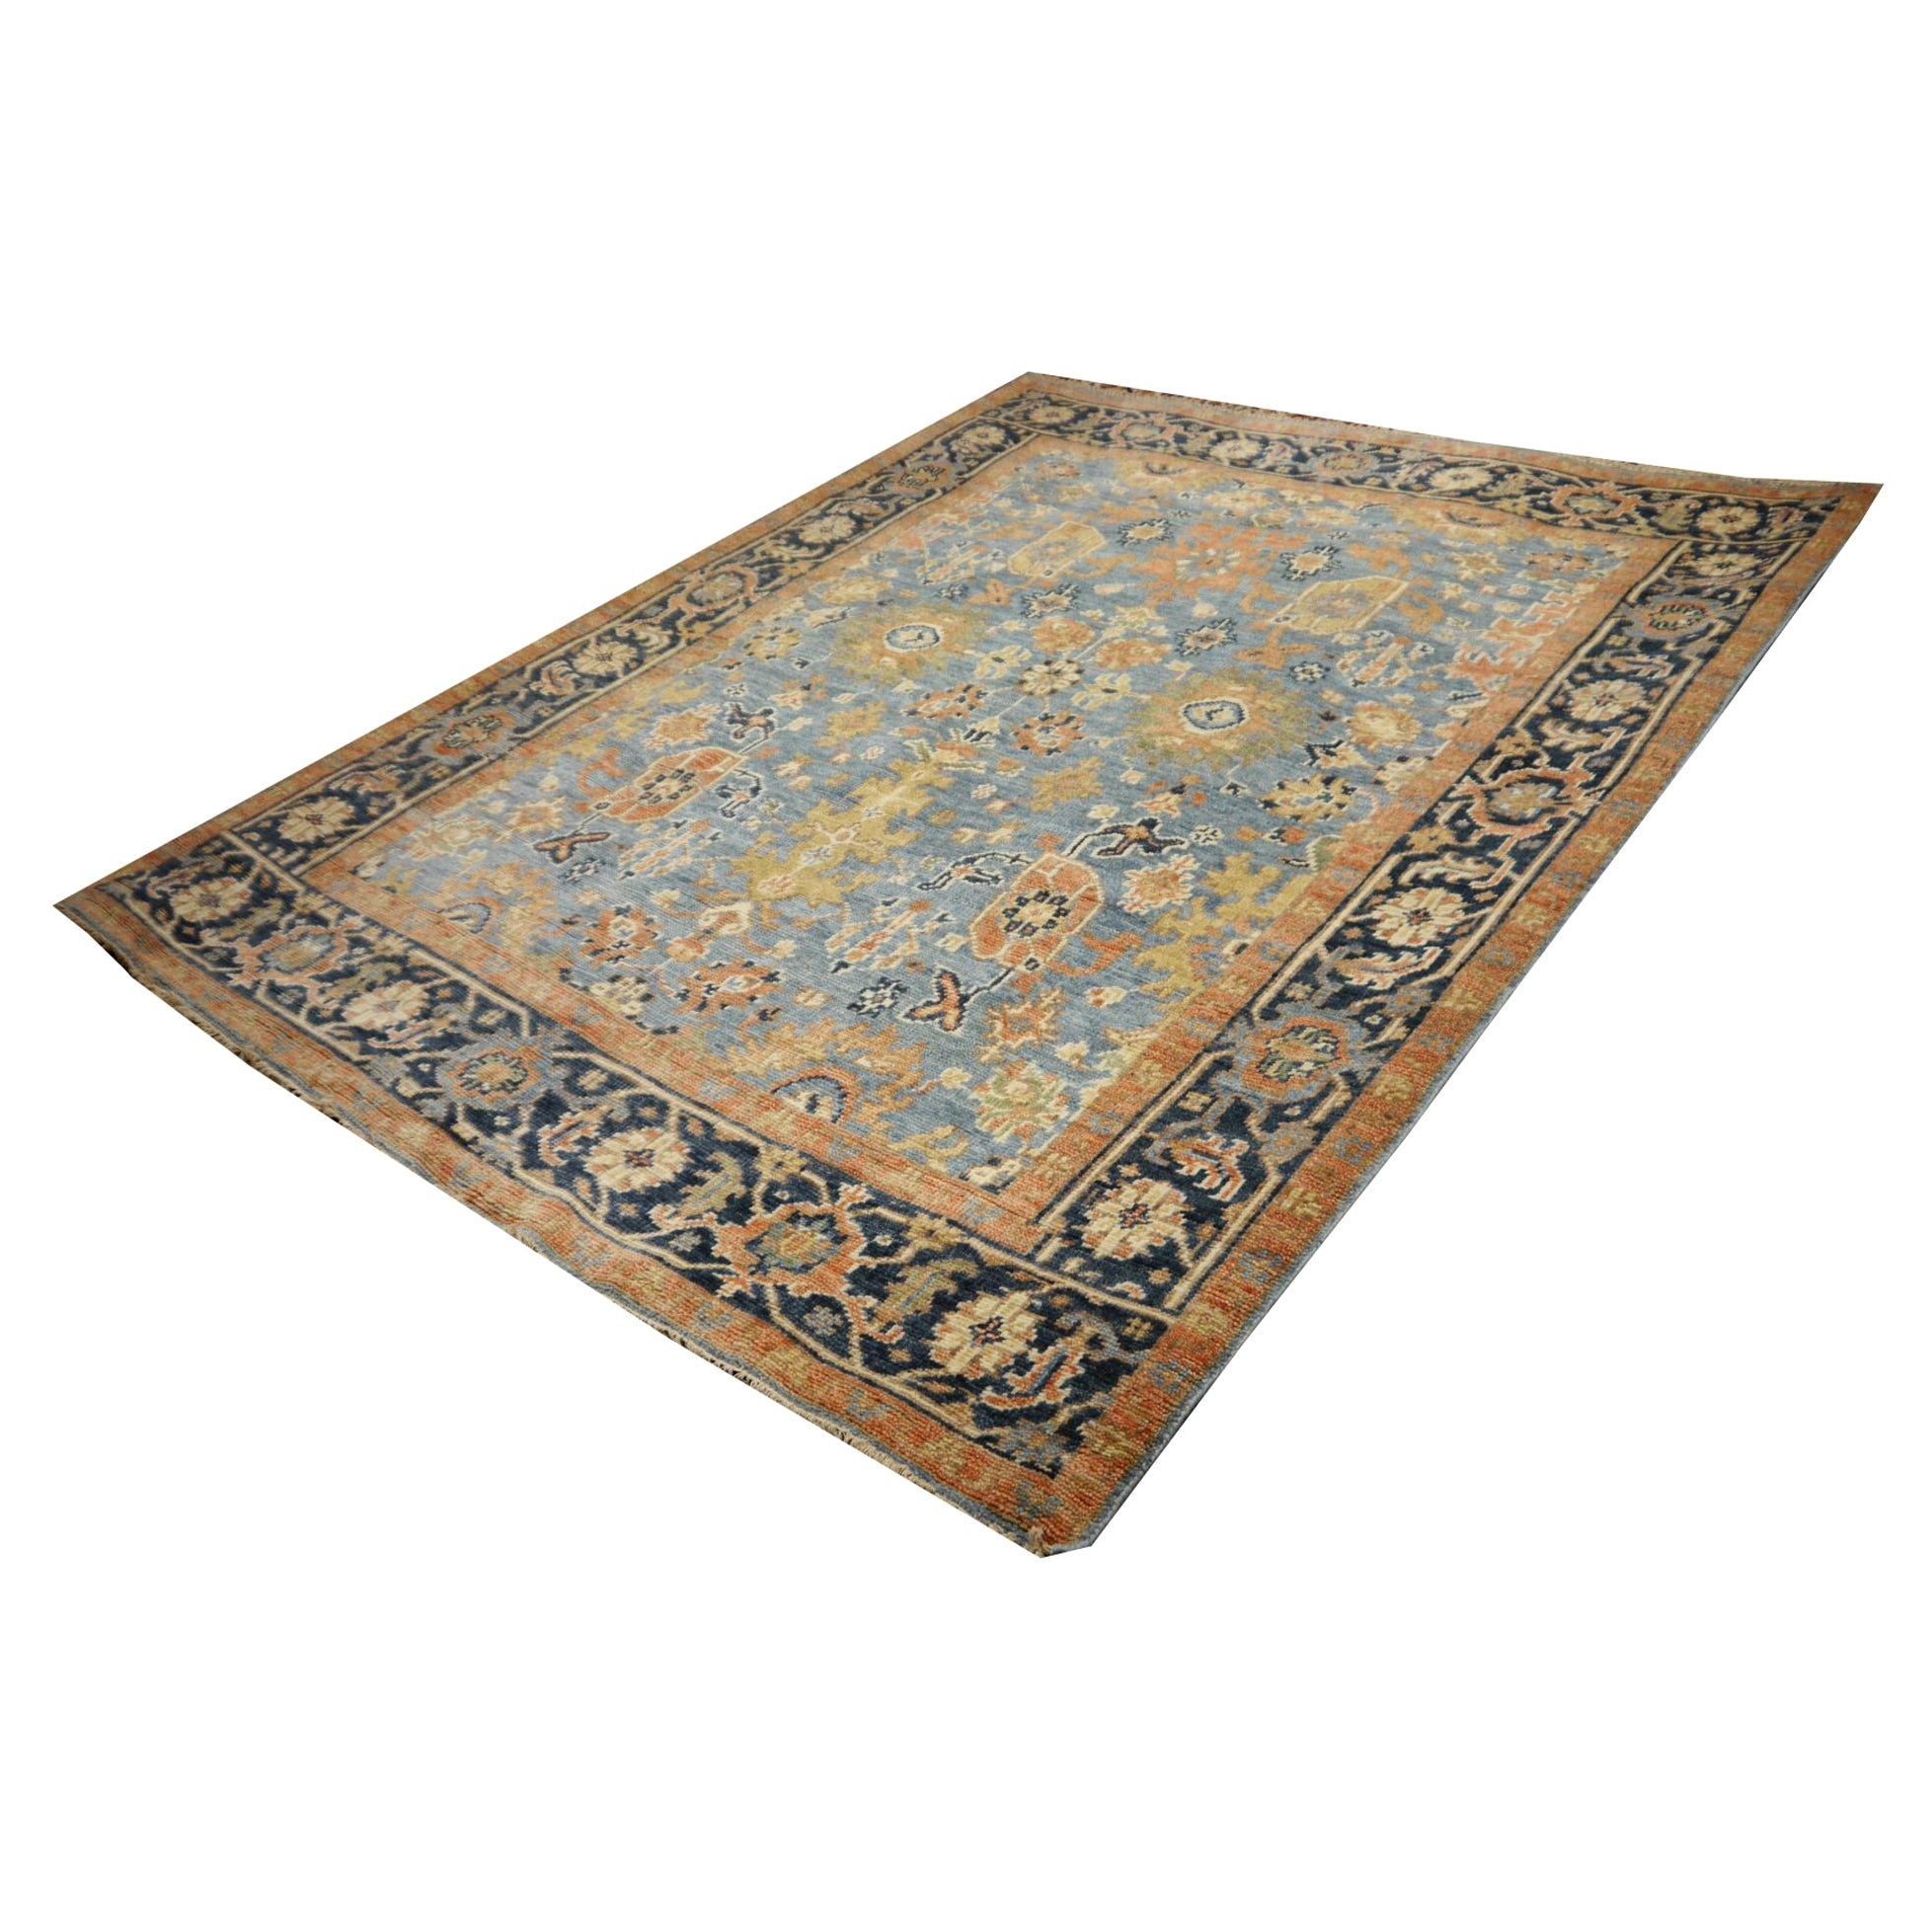 Schöner Heriz-Teppich aus Indien - Djoharian Collection'S

Heriz-Teppiche werden hauptsächlich aus feiner, handgesponnener Wolle hergestellt, 

Dieser Teppich wurde mit einem dekorativen traditionellen Muster hergestellt. Der Stil erinnert an